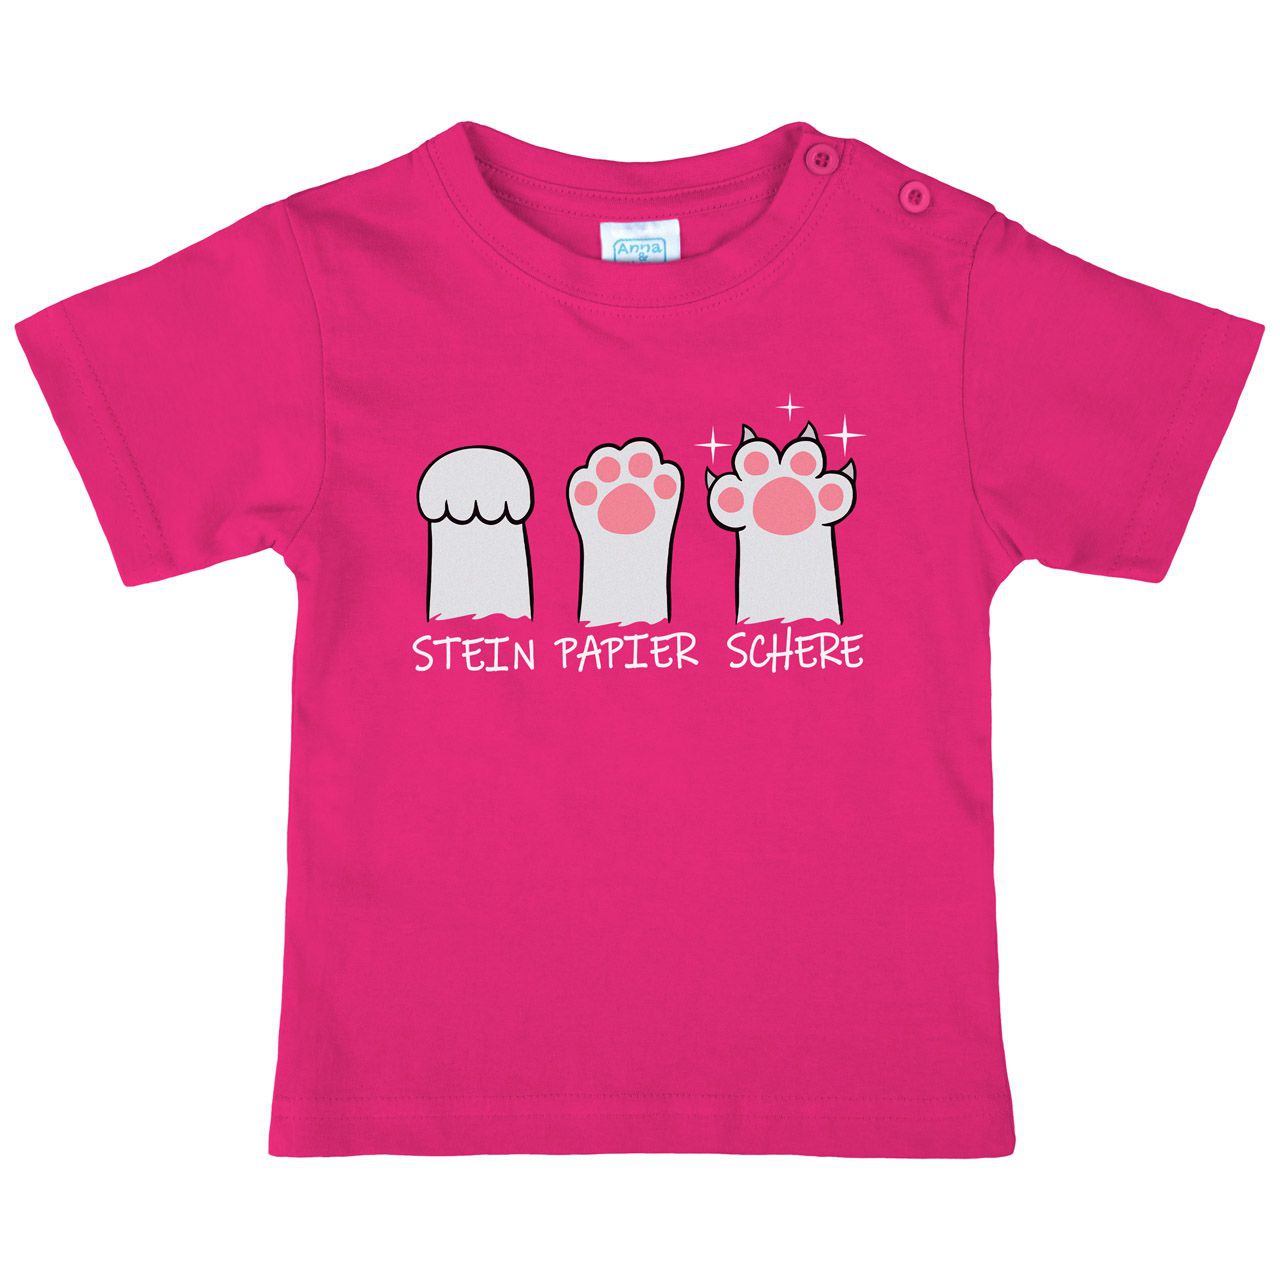 Stein Papier Schere Katzenpfote Kinder T-Shirt pink 122 / 128